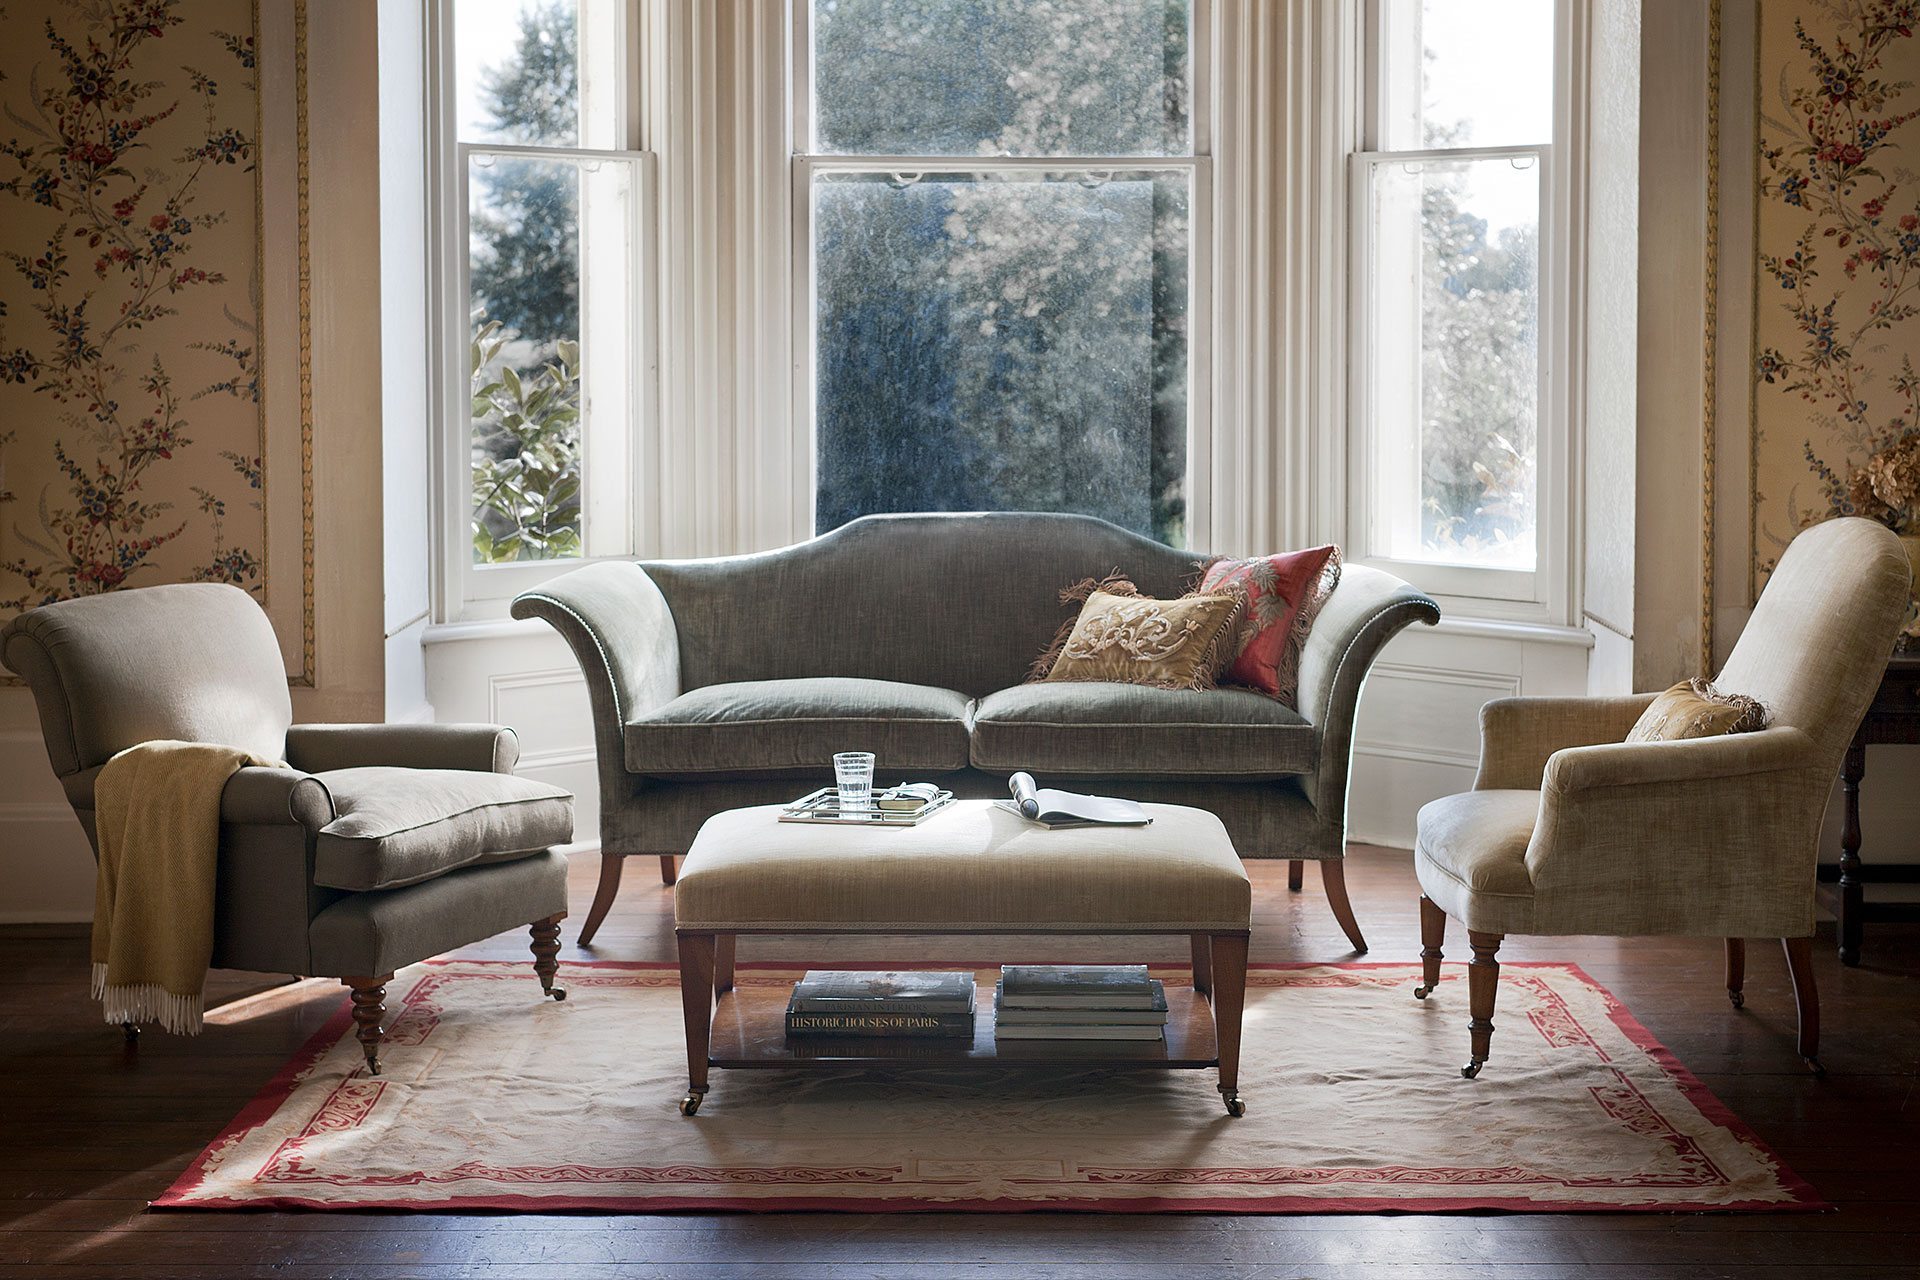 Top 10 British Furniture Designers C&TH Interior Design 2020